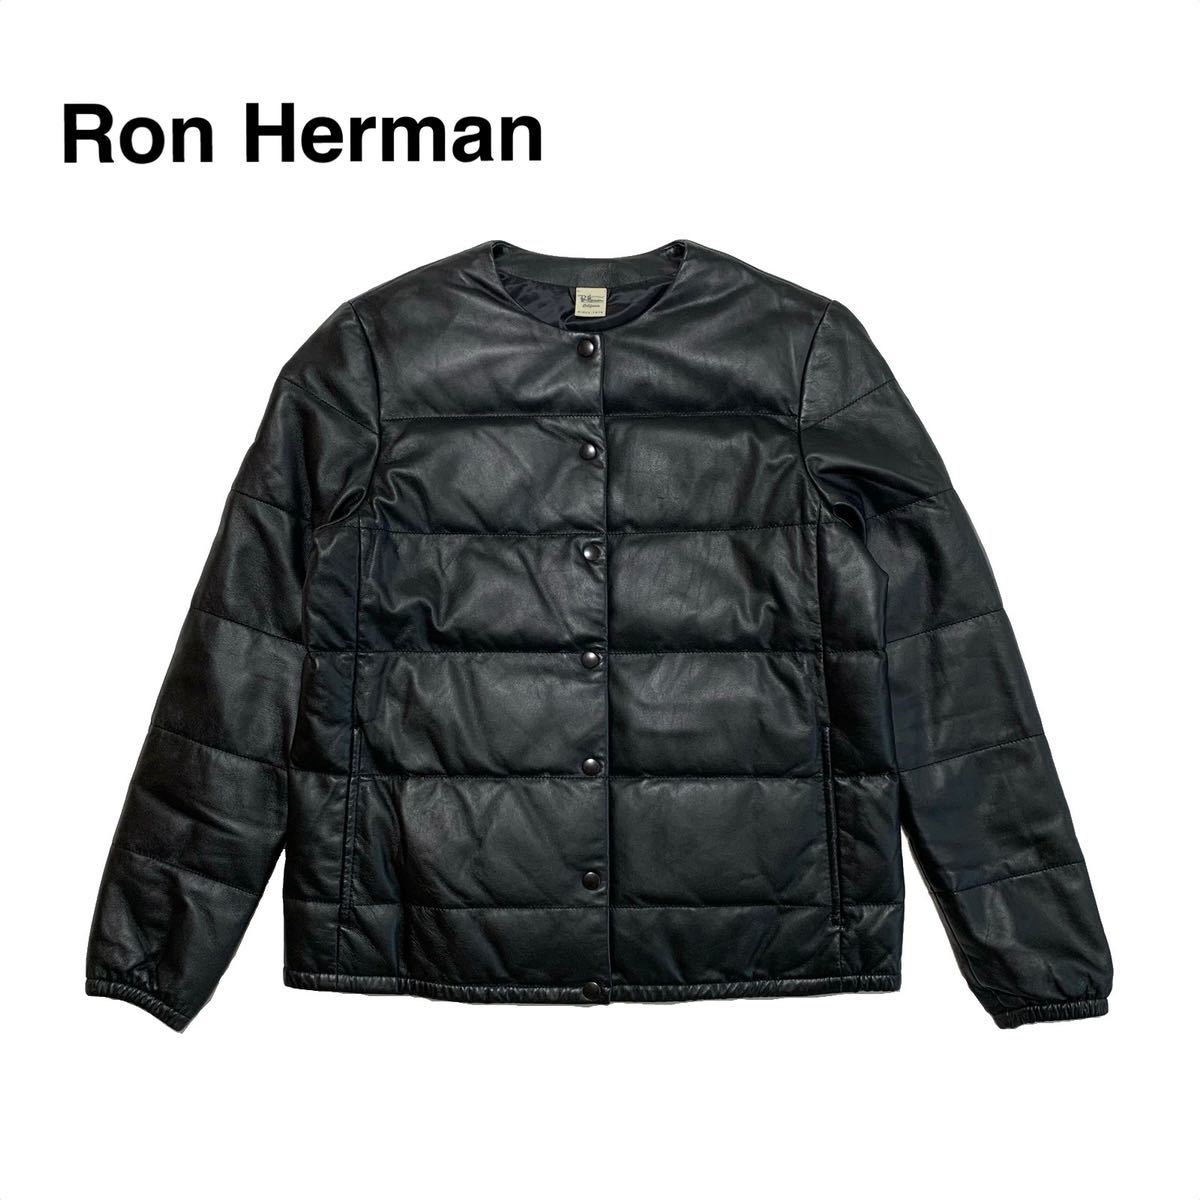 ☆良品 ロンハーマン Ron Herman スナップボタン 中綿 ノーカラー レザー ブルゾン ジャケット 黒 size XS ライダース ダウンジャケット